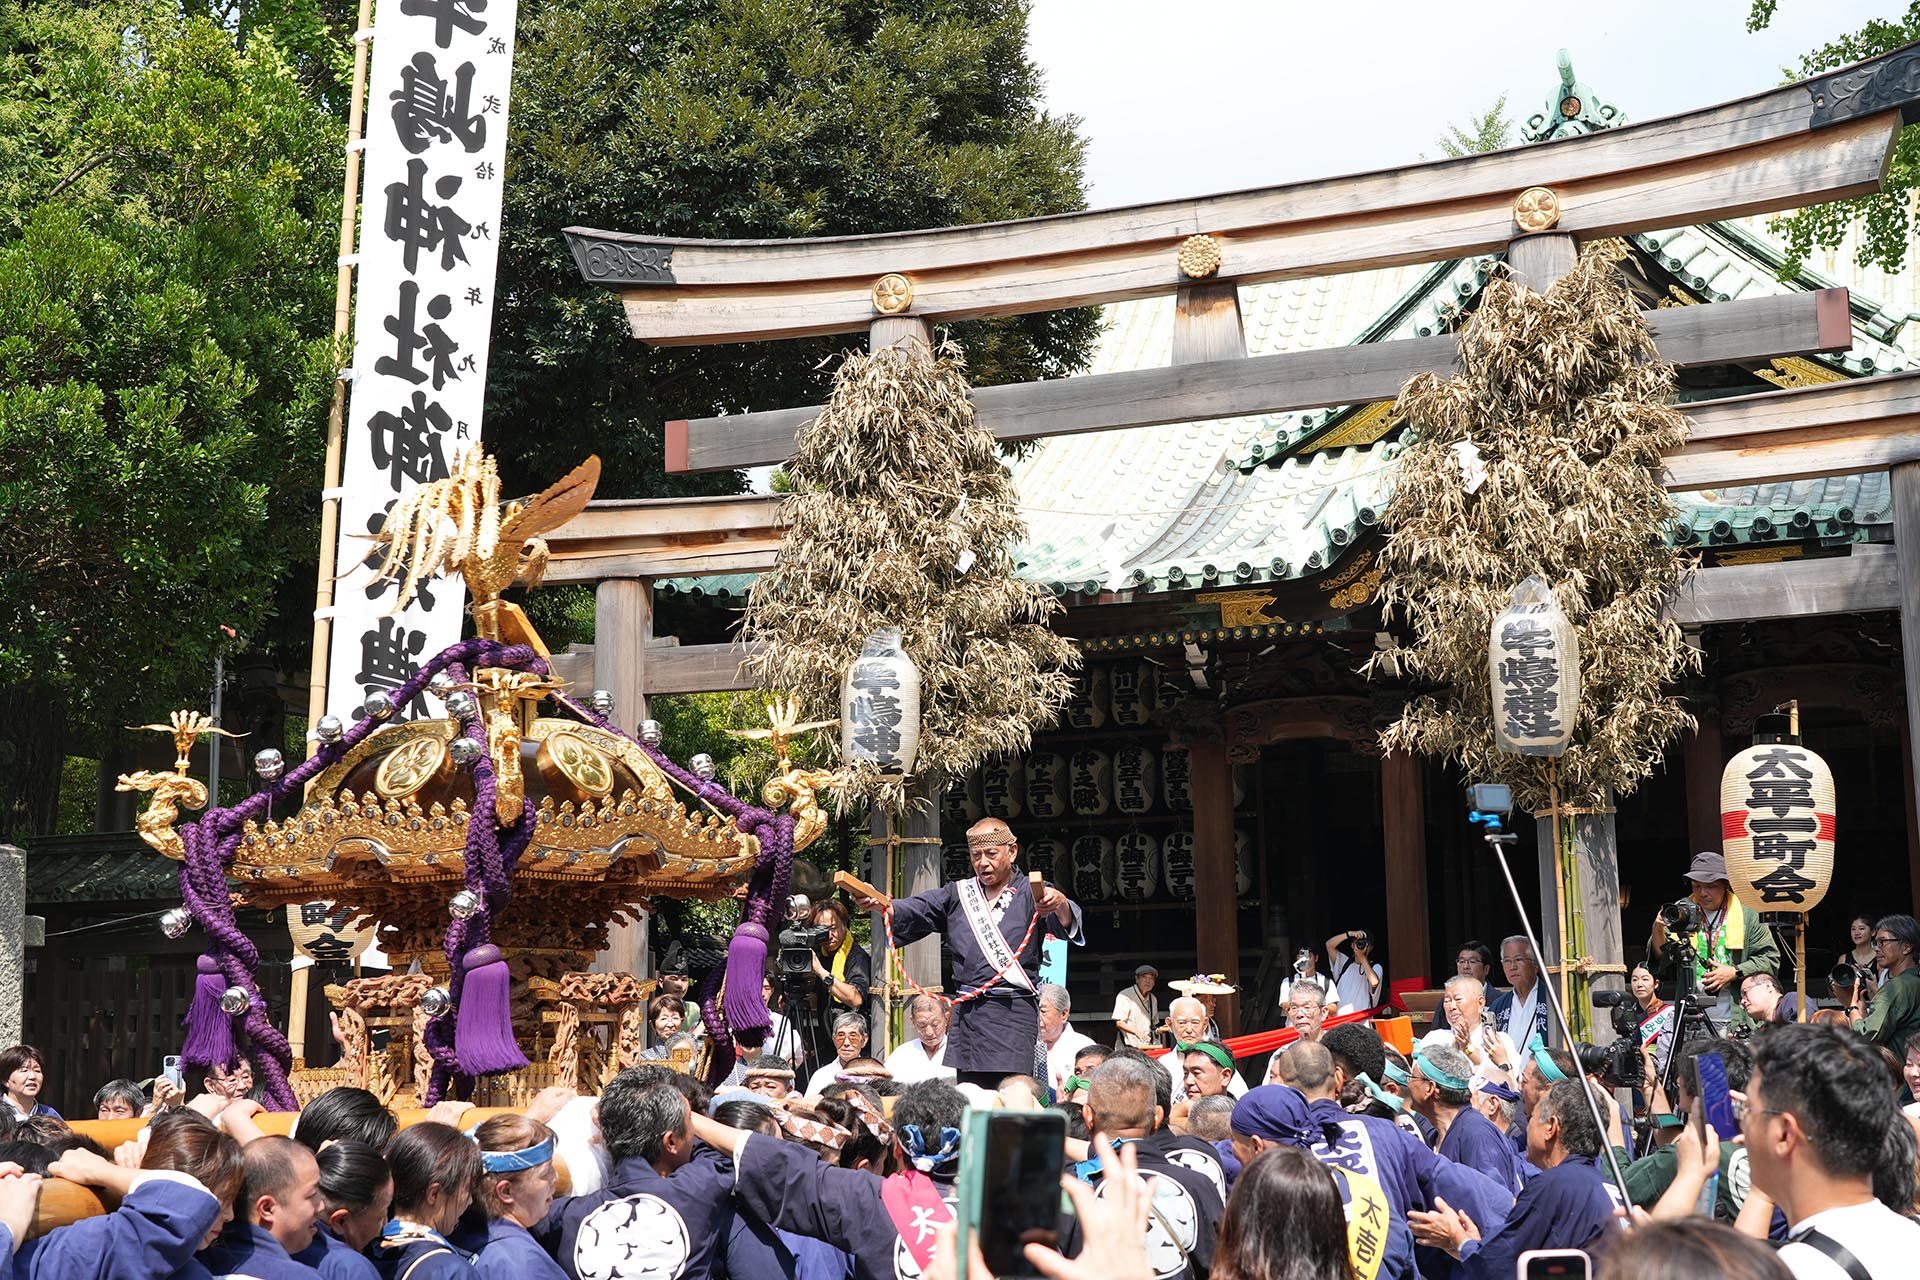 隅田川沿いにある牛嶋神社の大祭「牛嶋神社大祭 御鎮座1165年」